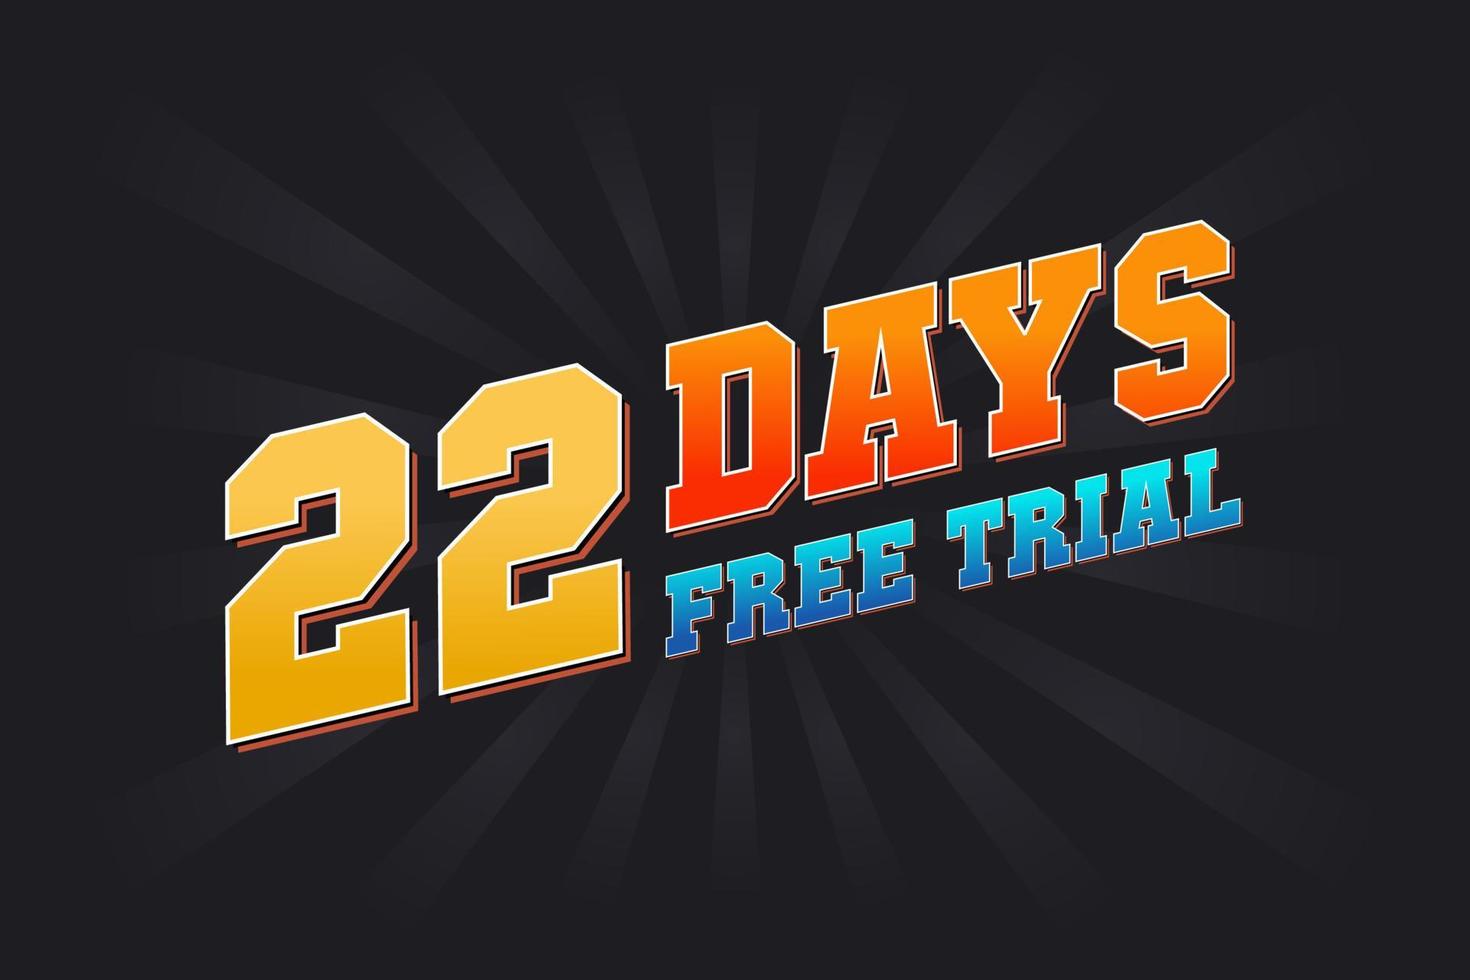 22 giorni gratuito prova promozionale grassetto testo azione vettore